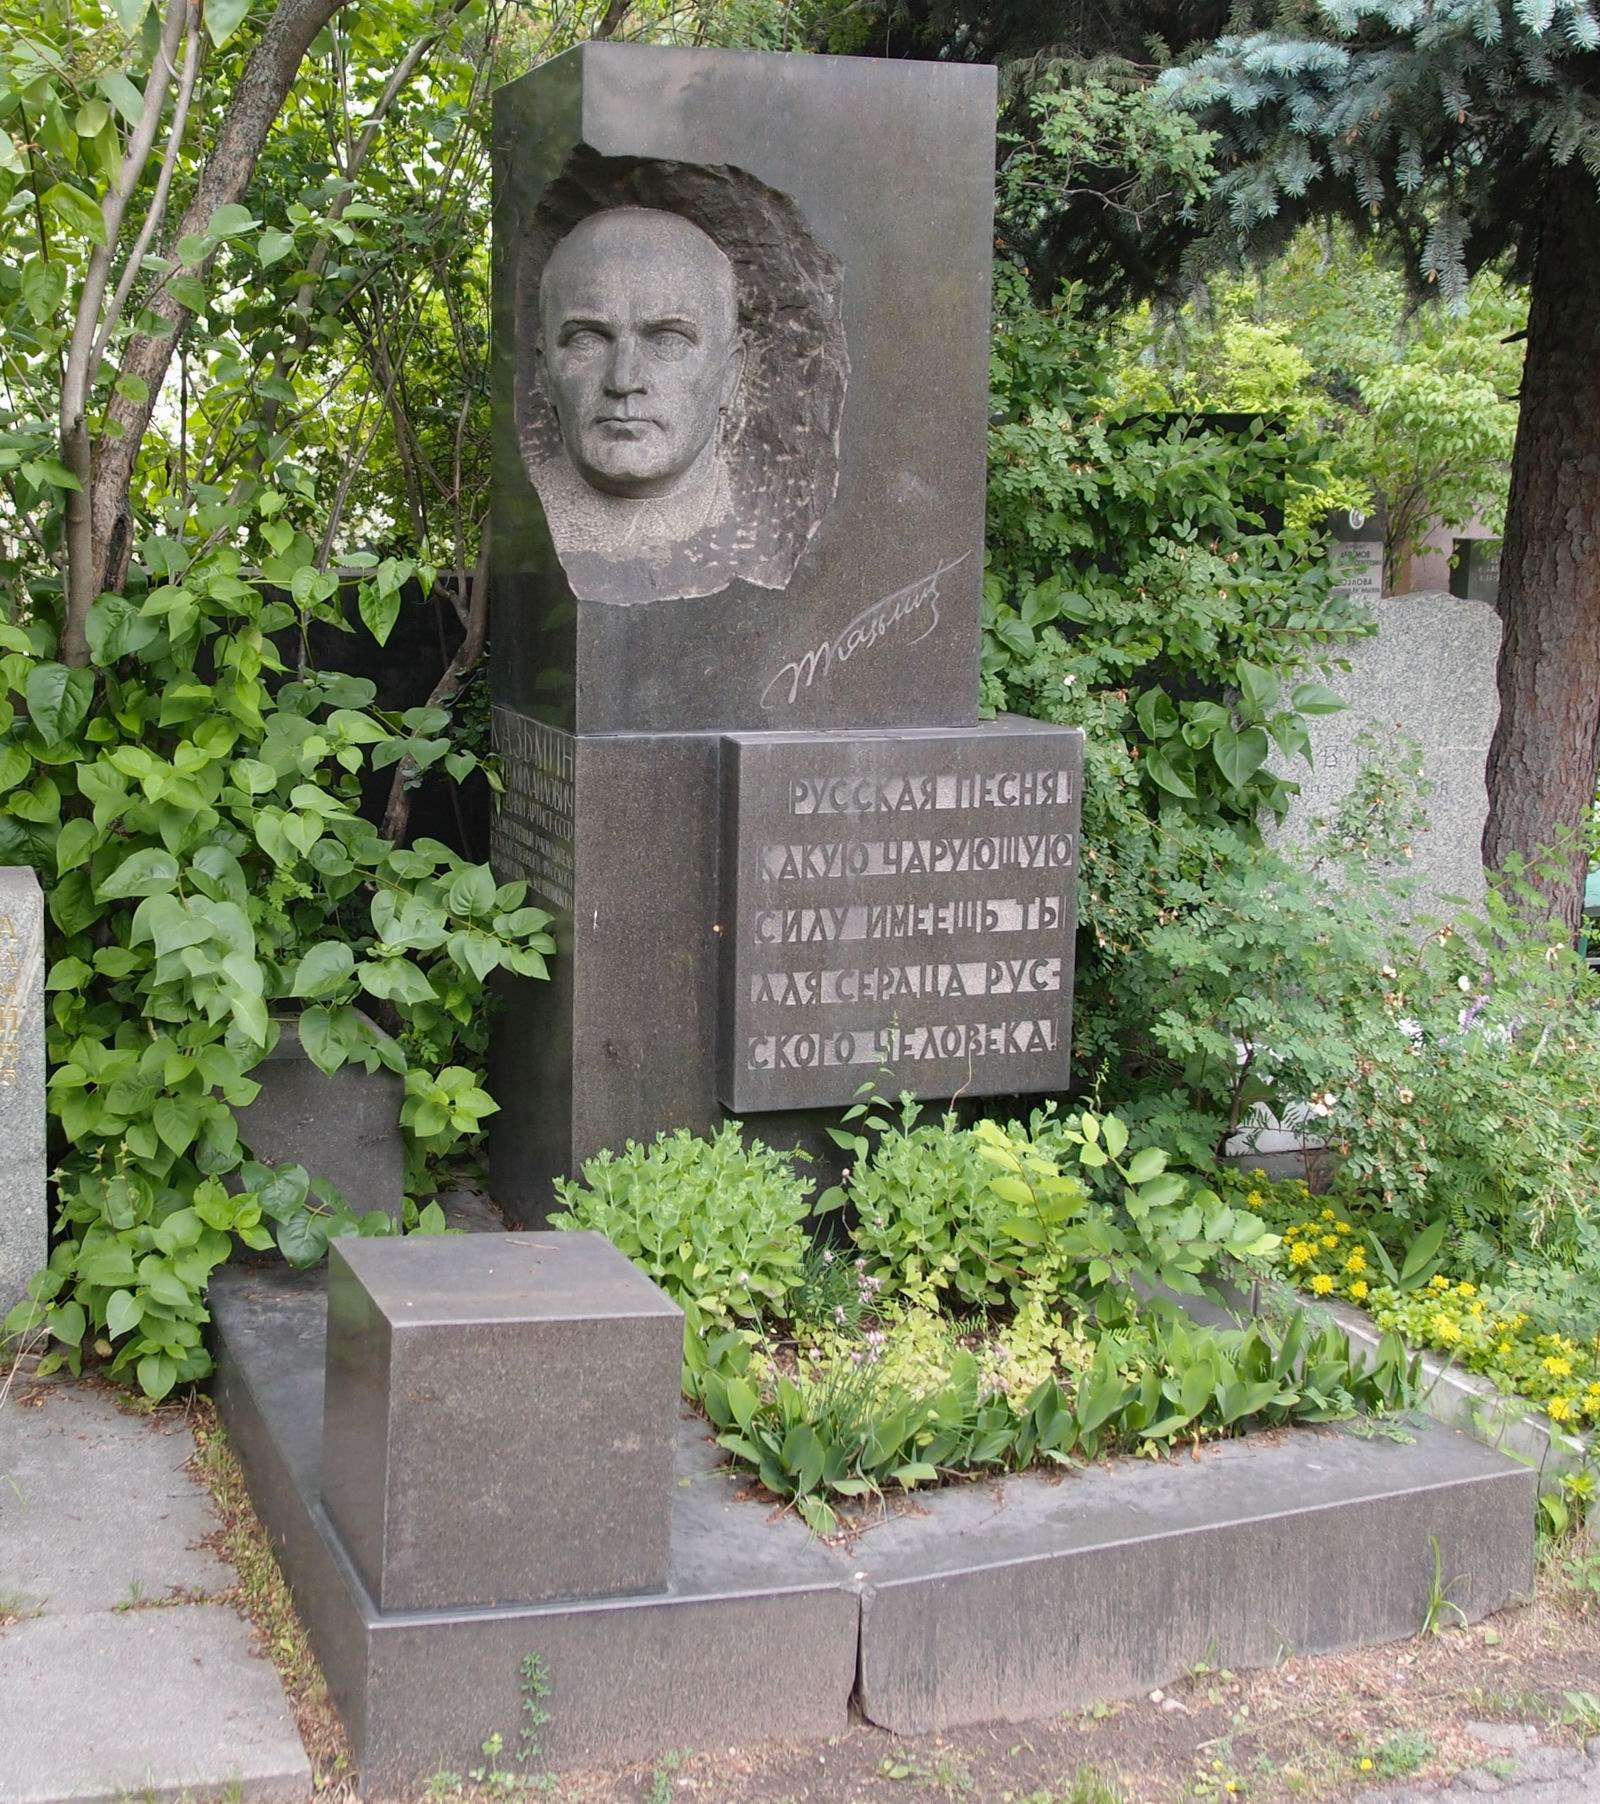 Памятник на могиле Казьмина П.М. (1892-1964), на Новодевичьем кладбище (6-7-8). Нажмите левую кнопку мыши, чтобы увидеть фрагмент памятника крупно.